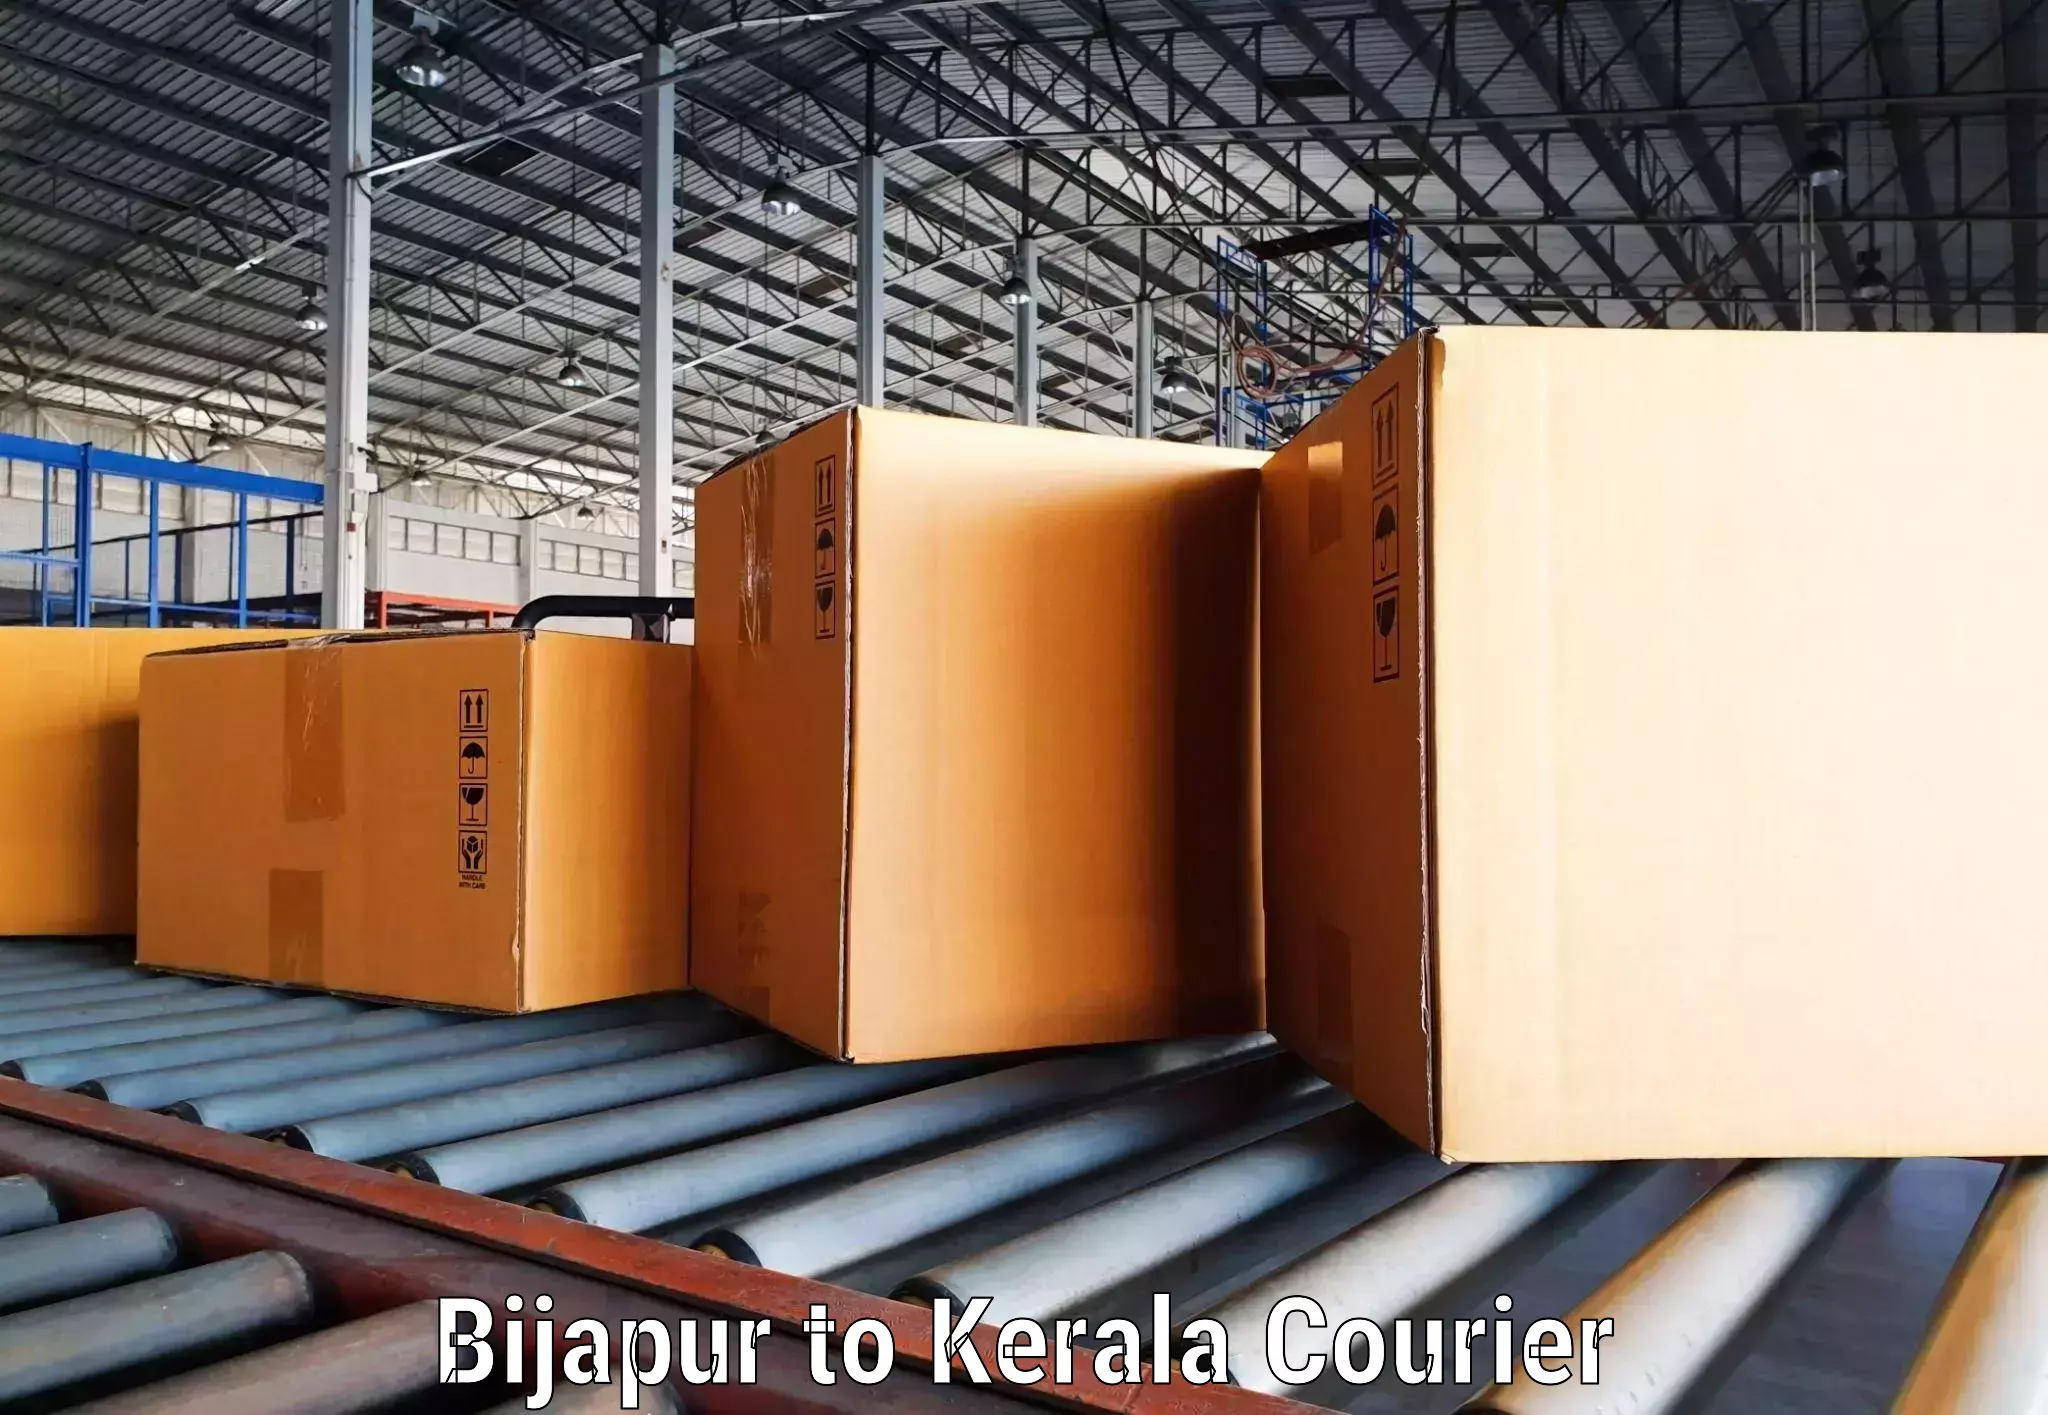 Courier service partnerships Bijapur to Kerala